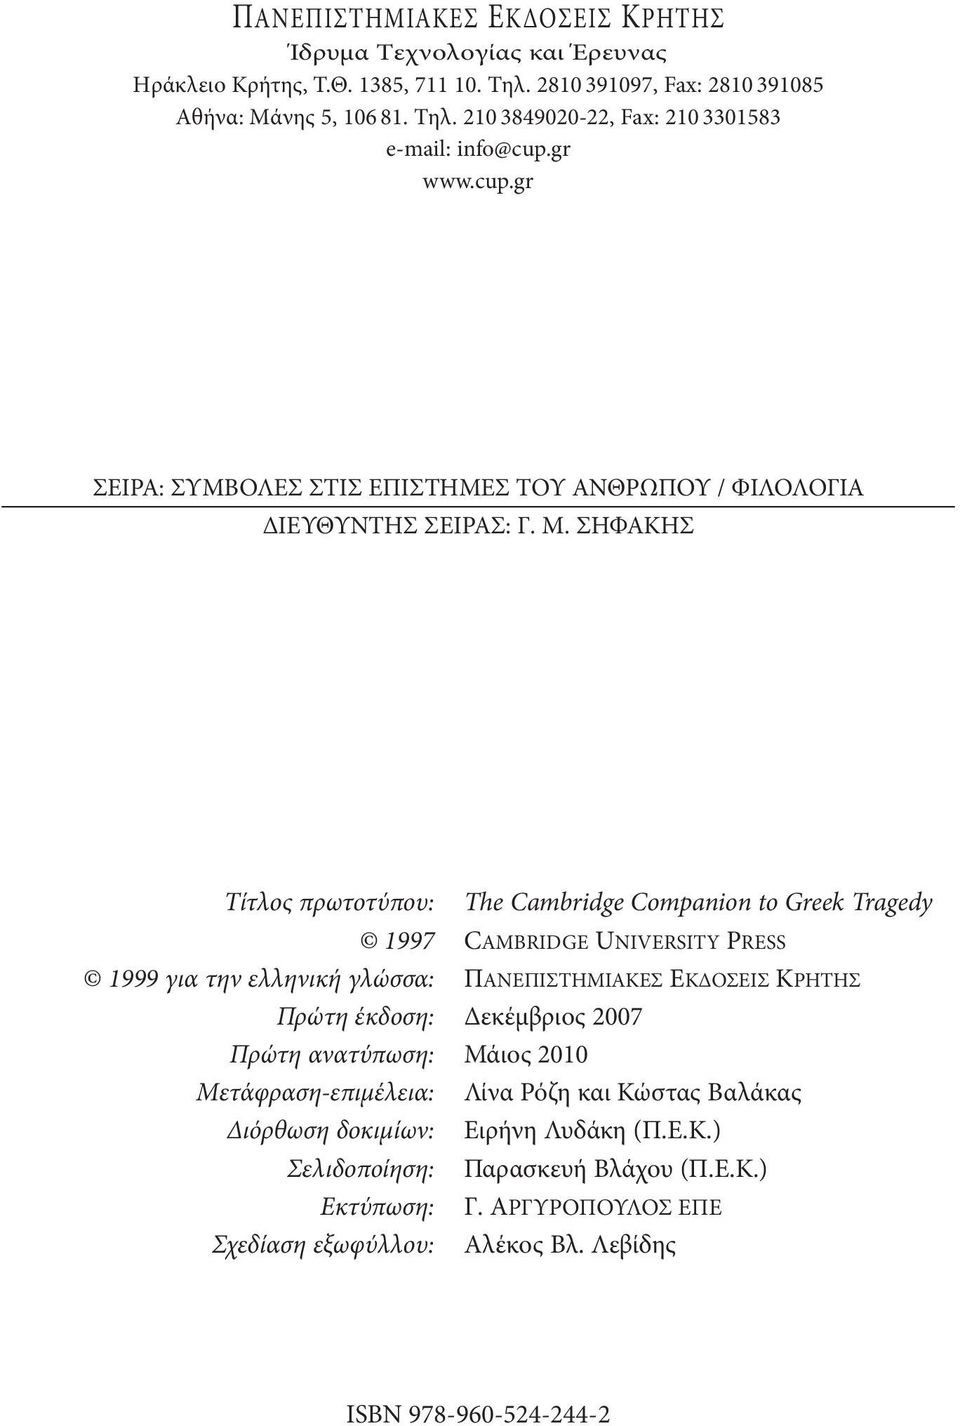 ΣΗΦΑΚΗΣ Τίτλος πρωτοτύπου: The Cambridge Companion to Greek Tragedy 1997 Cambridge University Press 1999 για την ελληνική γλώσσα: ΠΑΝΕΠΙΣΤΗΜΙΑΚΕΣ ΕΚΔΟΣΕΙΣ ΚΡΗΤΗΣ Πρώτη έκδοση: Δεκέμβριος